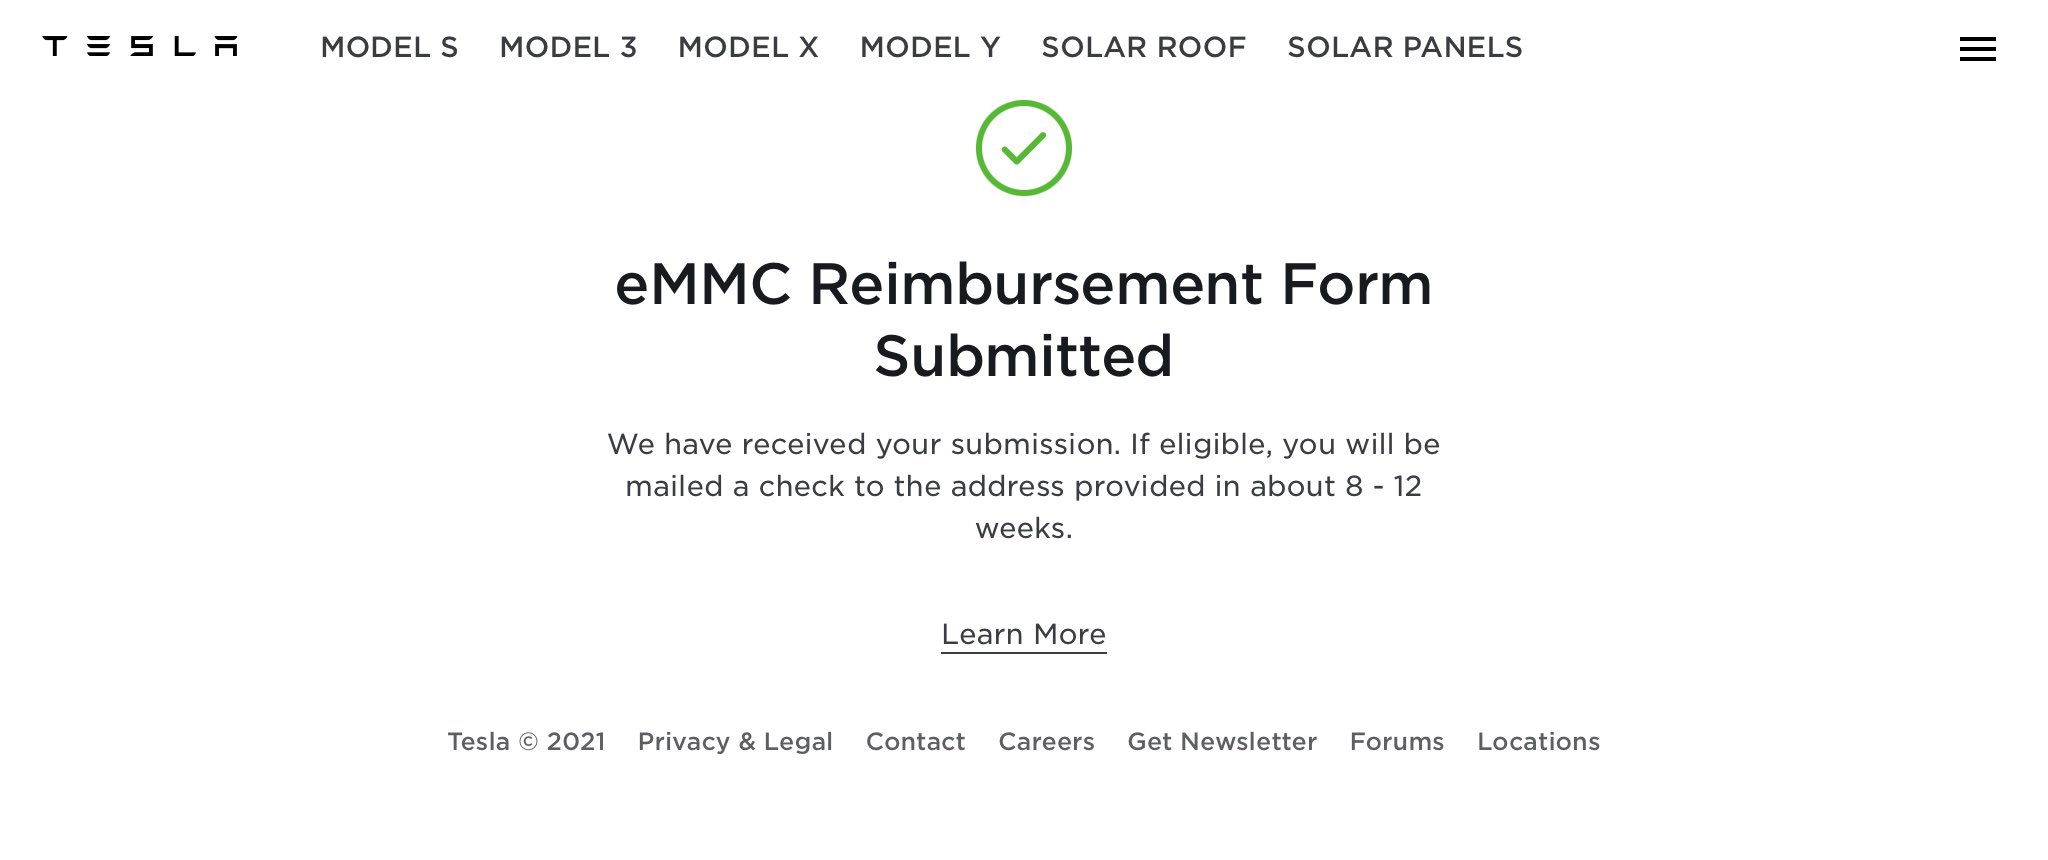 eMMC reimbursement